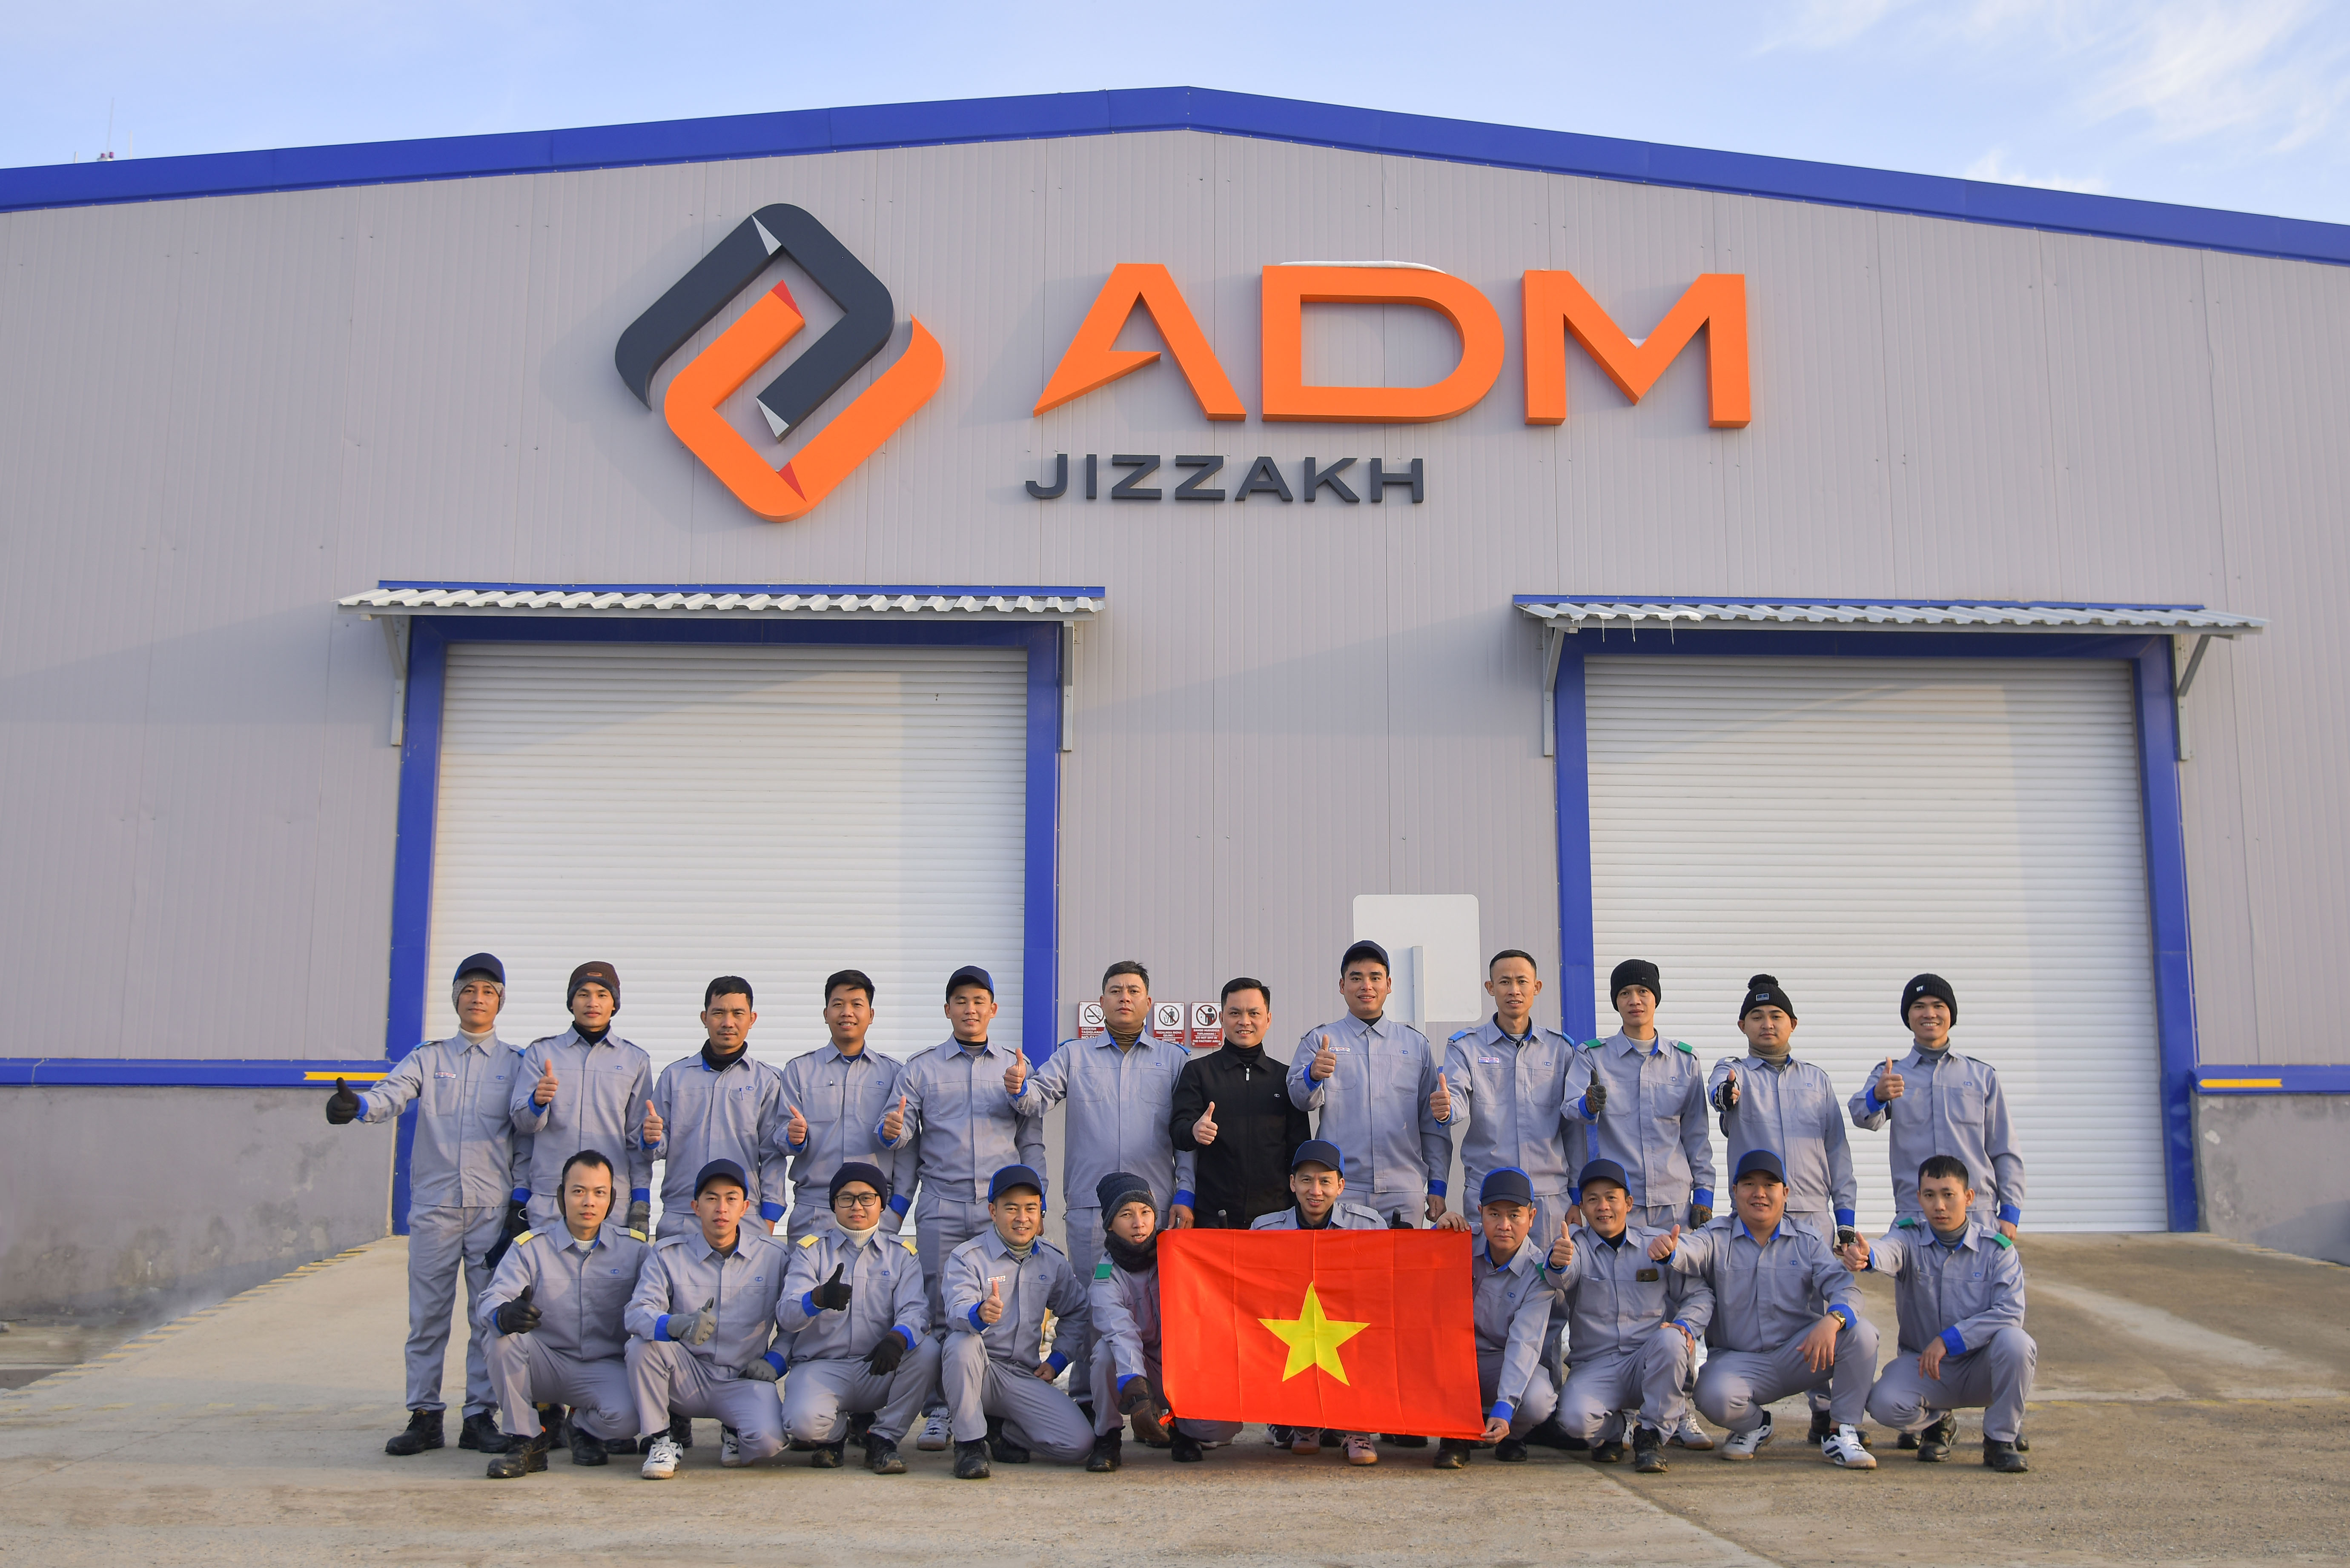 Đoàn nhân sự nhà máy THACO KIA tham gia giám sát sản xuất xe Kia tại công ty ADM_resize